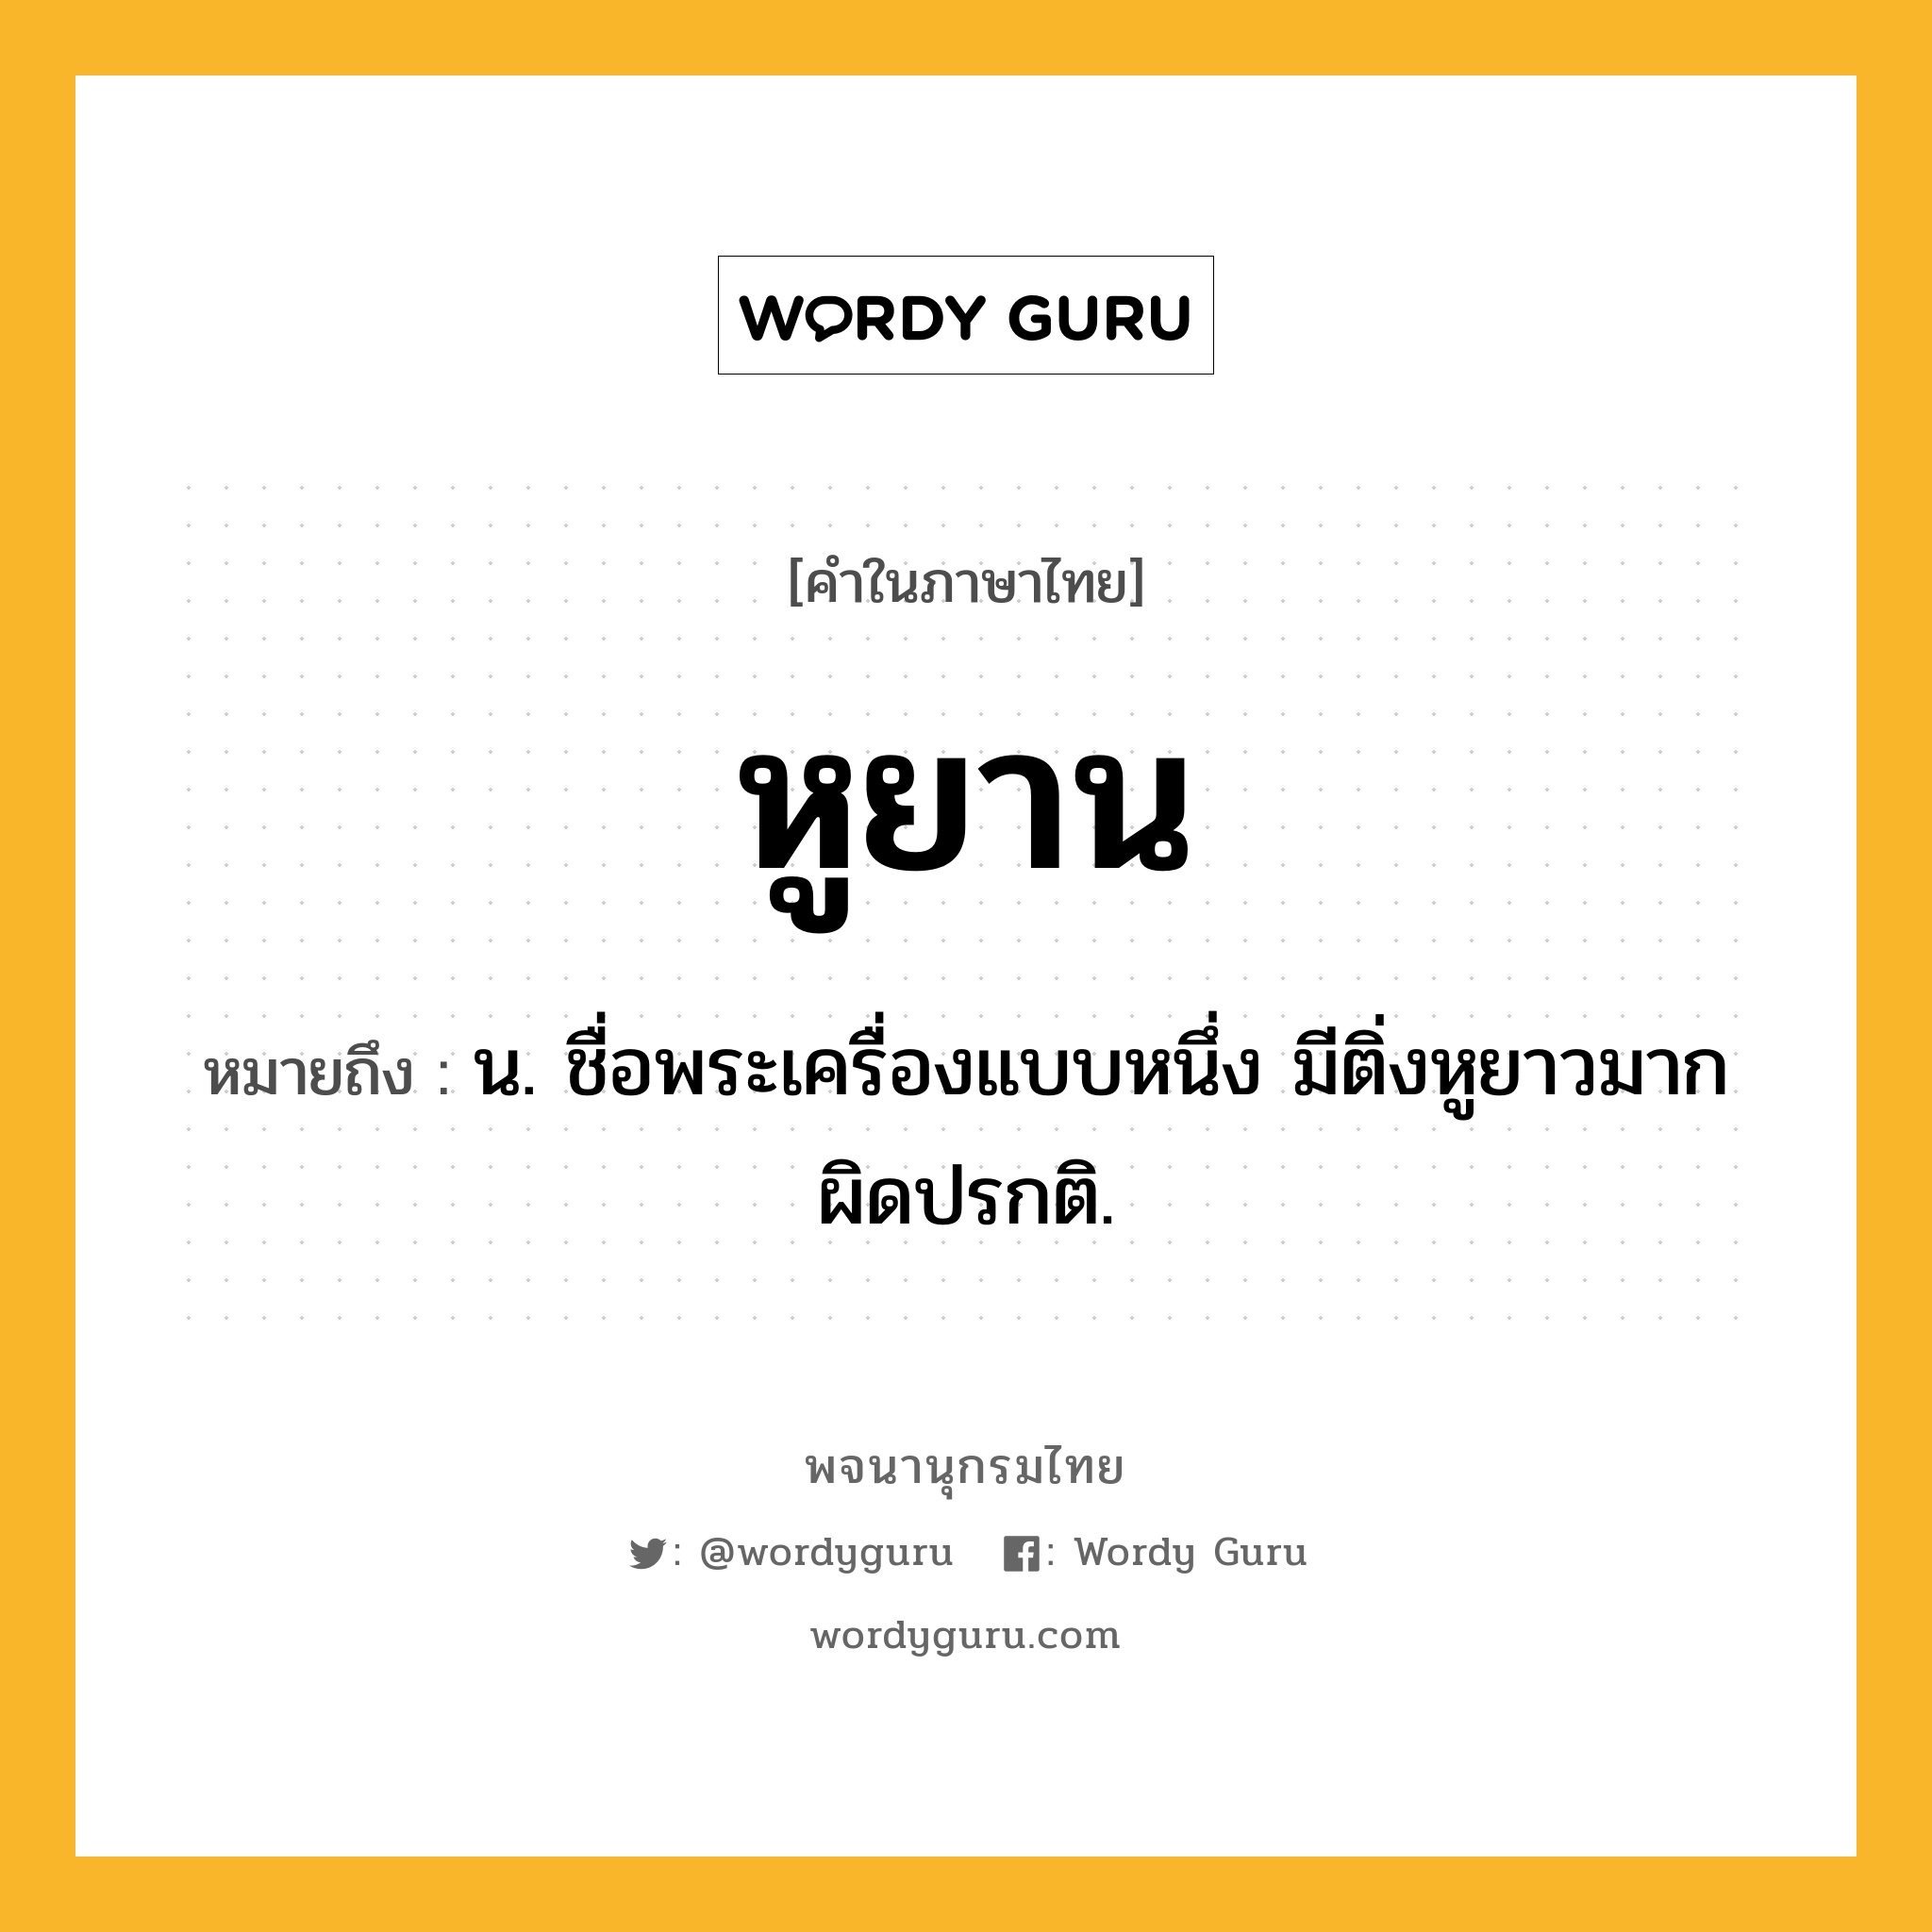 หูยาน ความหมาย หมายถึงอะไร?, คำในภาษาไทย หูยาน หมายถึง น. ชื่อพระเครื่องแบบหนึ่ง มีติ่งหูยาวมากผิดปรกติ.